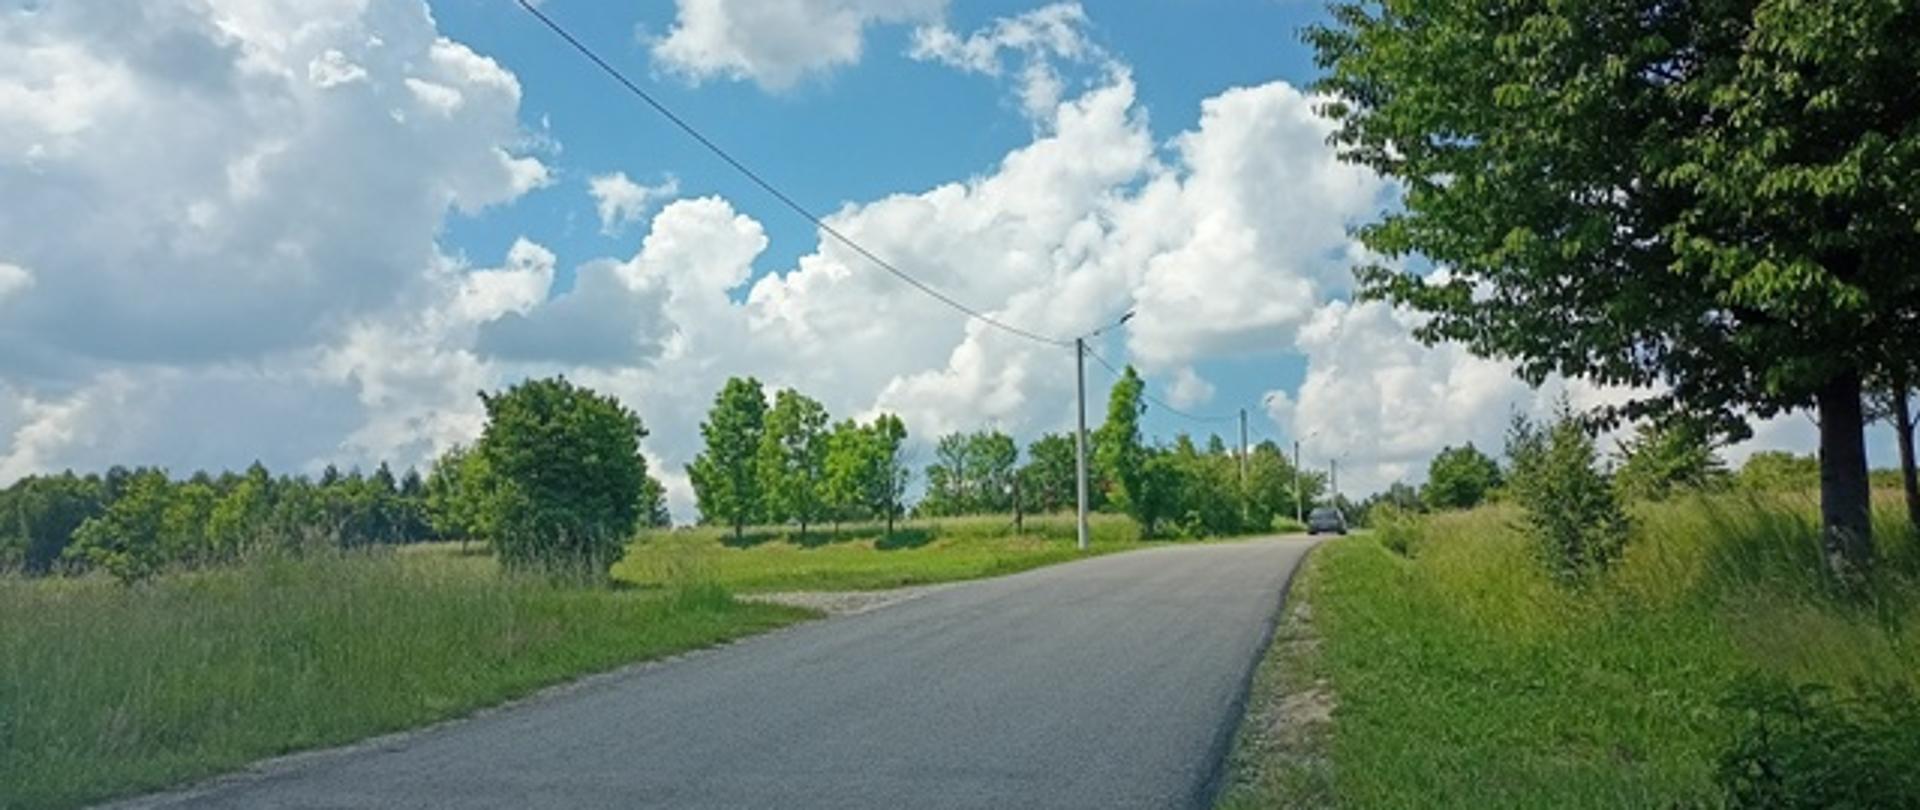 widoczna droga asfaltowa słupy elektryczne oświetlenia ulicznego po lewej i prawej łąka i drzewa niebo niebieskie z białymi pierzastymi chmurami 